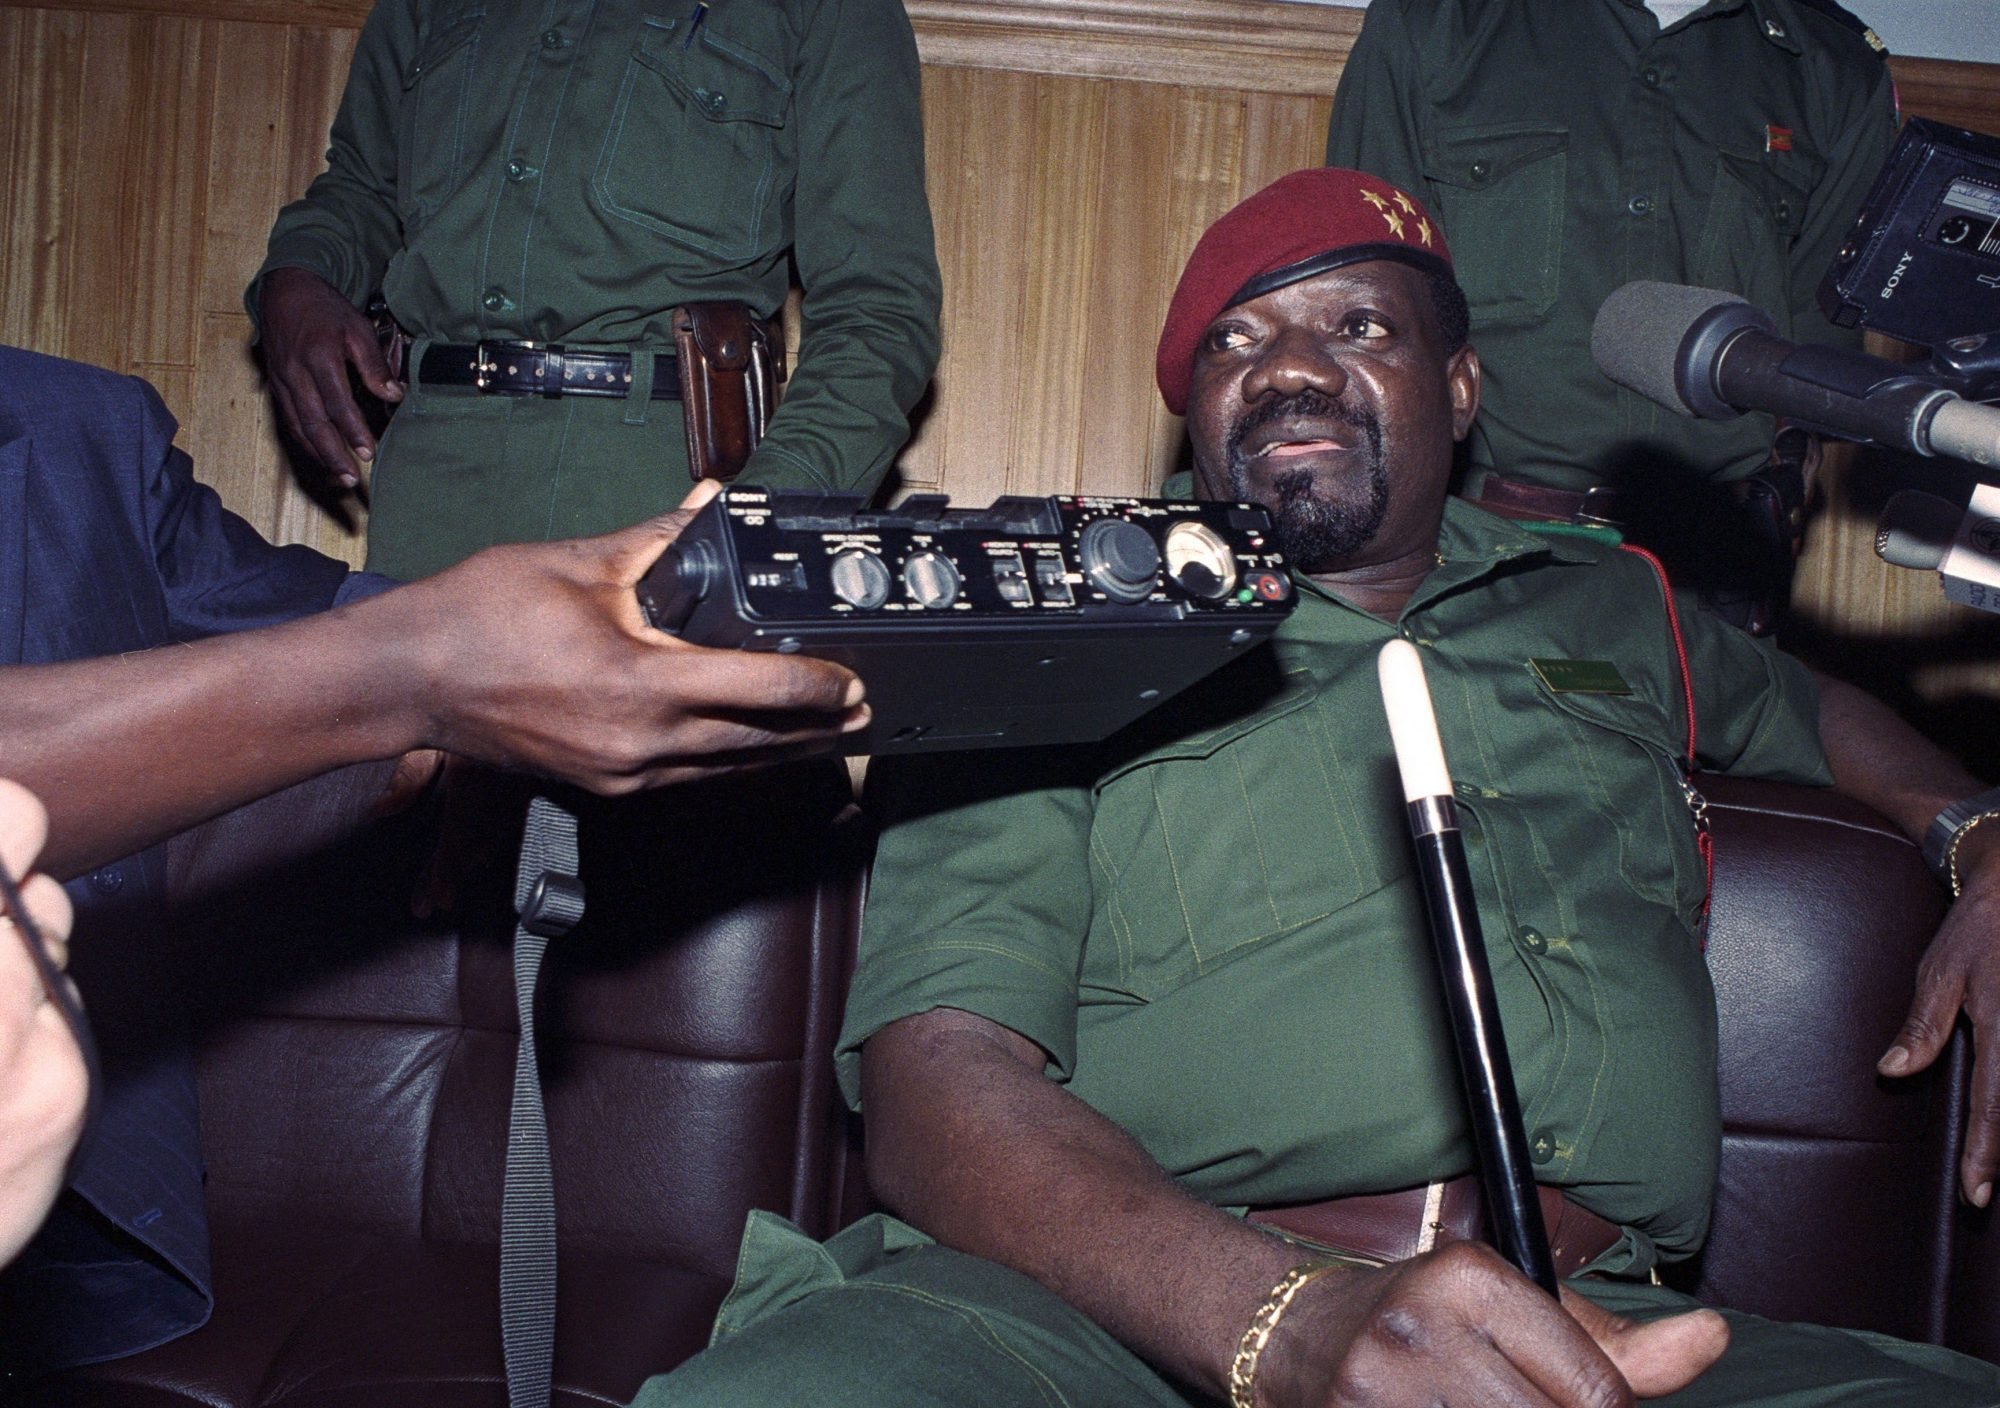 Herói ou sanguinário? Savimbi vai ser enterrado, mas a discussão sobre o seu legado não desapareceu – Observador